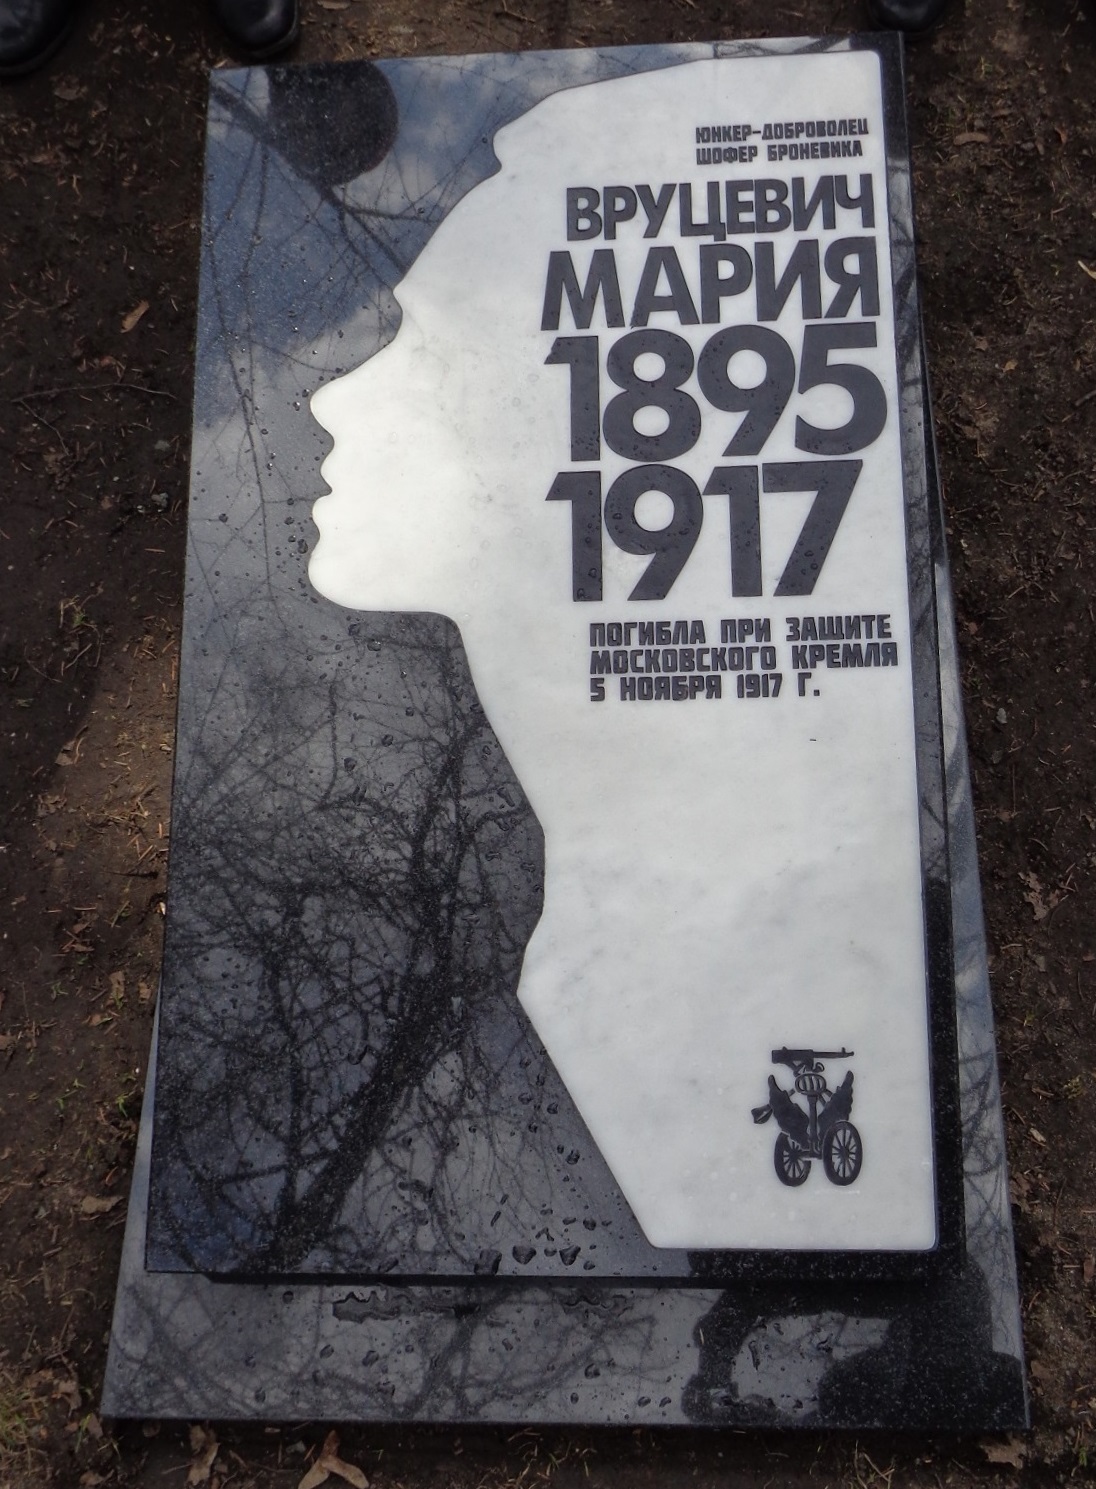 На Братском кладбище у памятника Шлихтеру С.А. провели обряд церковного освящения надгробия юнкеру Марии Вруцевич, взамен утраченного в 1930-е годы. 0_17bd81_a16d232d_orig